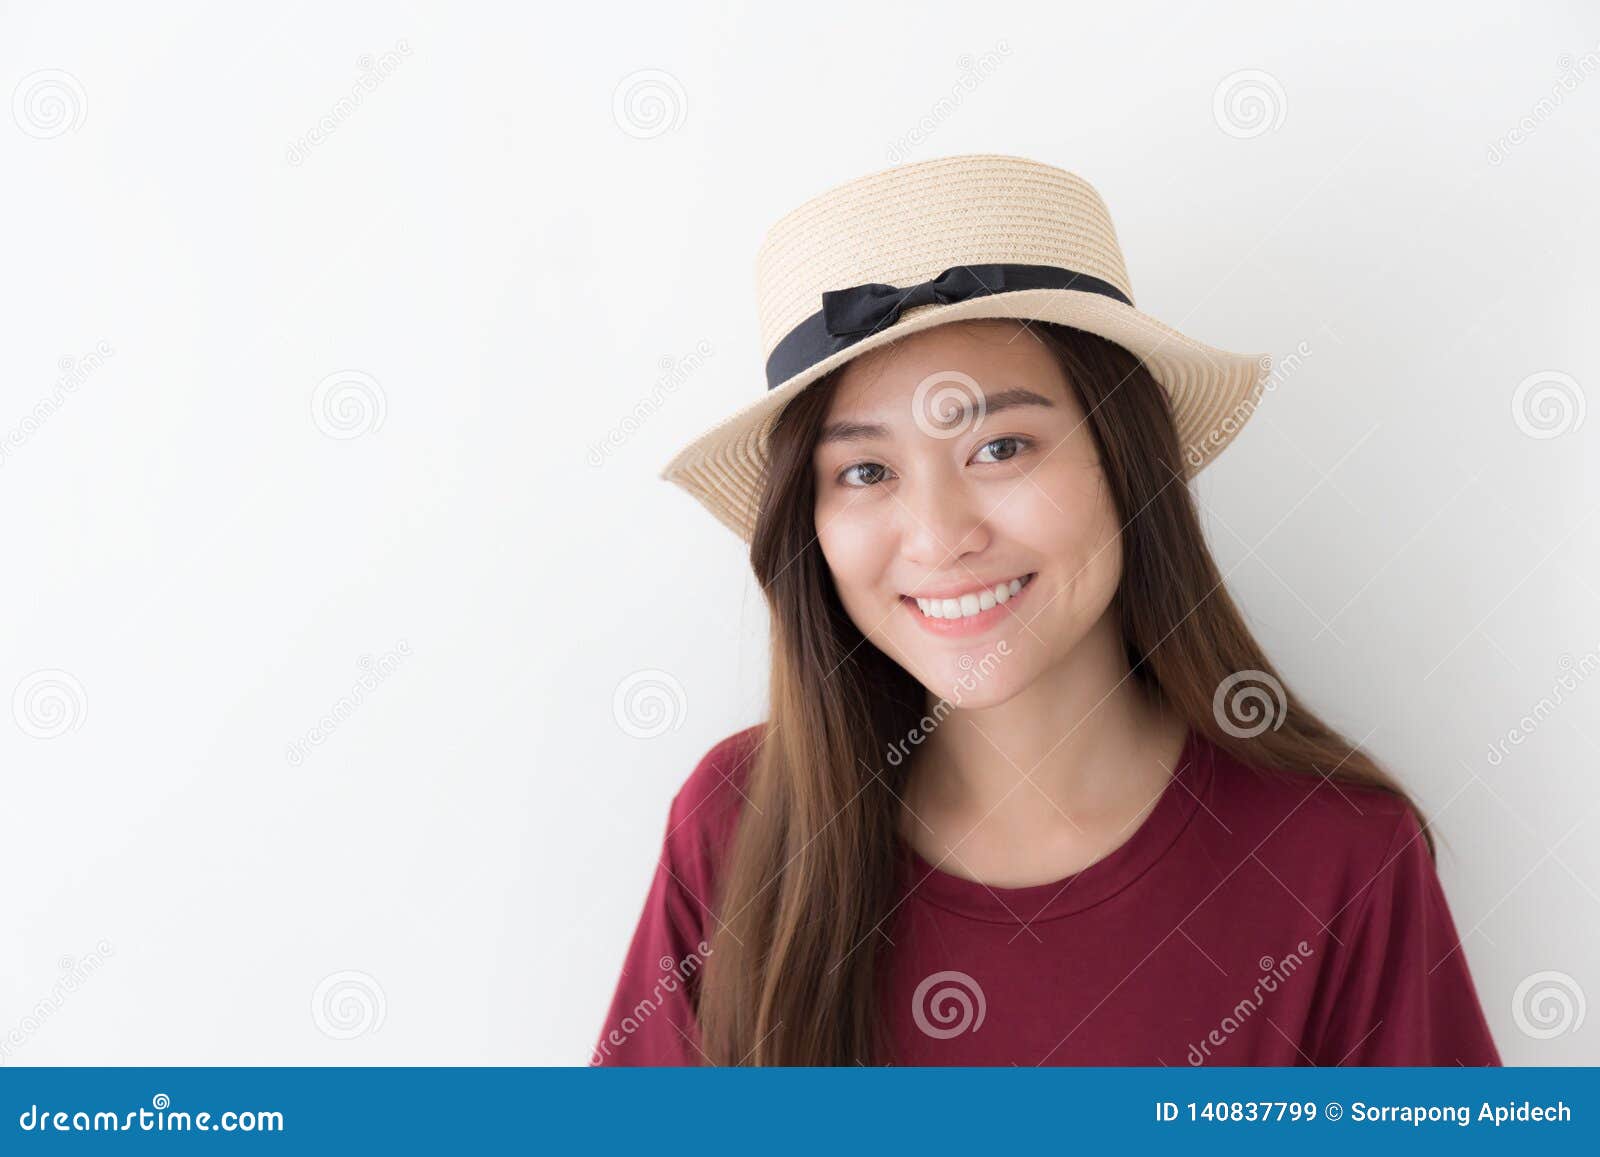 Asiatisches Mädchen, das ein rotes Hemd, stehend trägt, auf einem weißen Hintergrund lächelnd